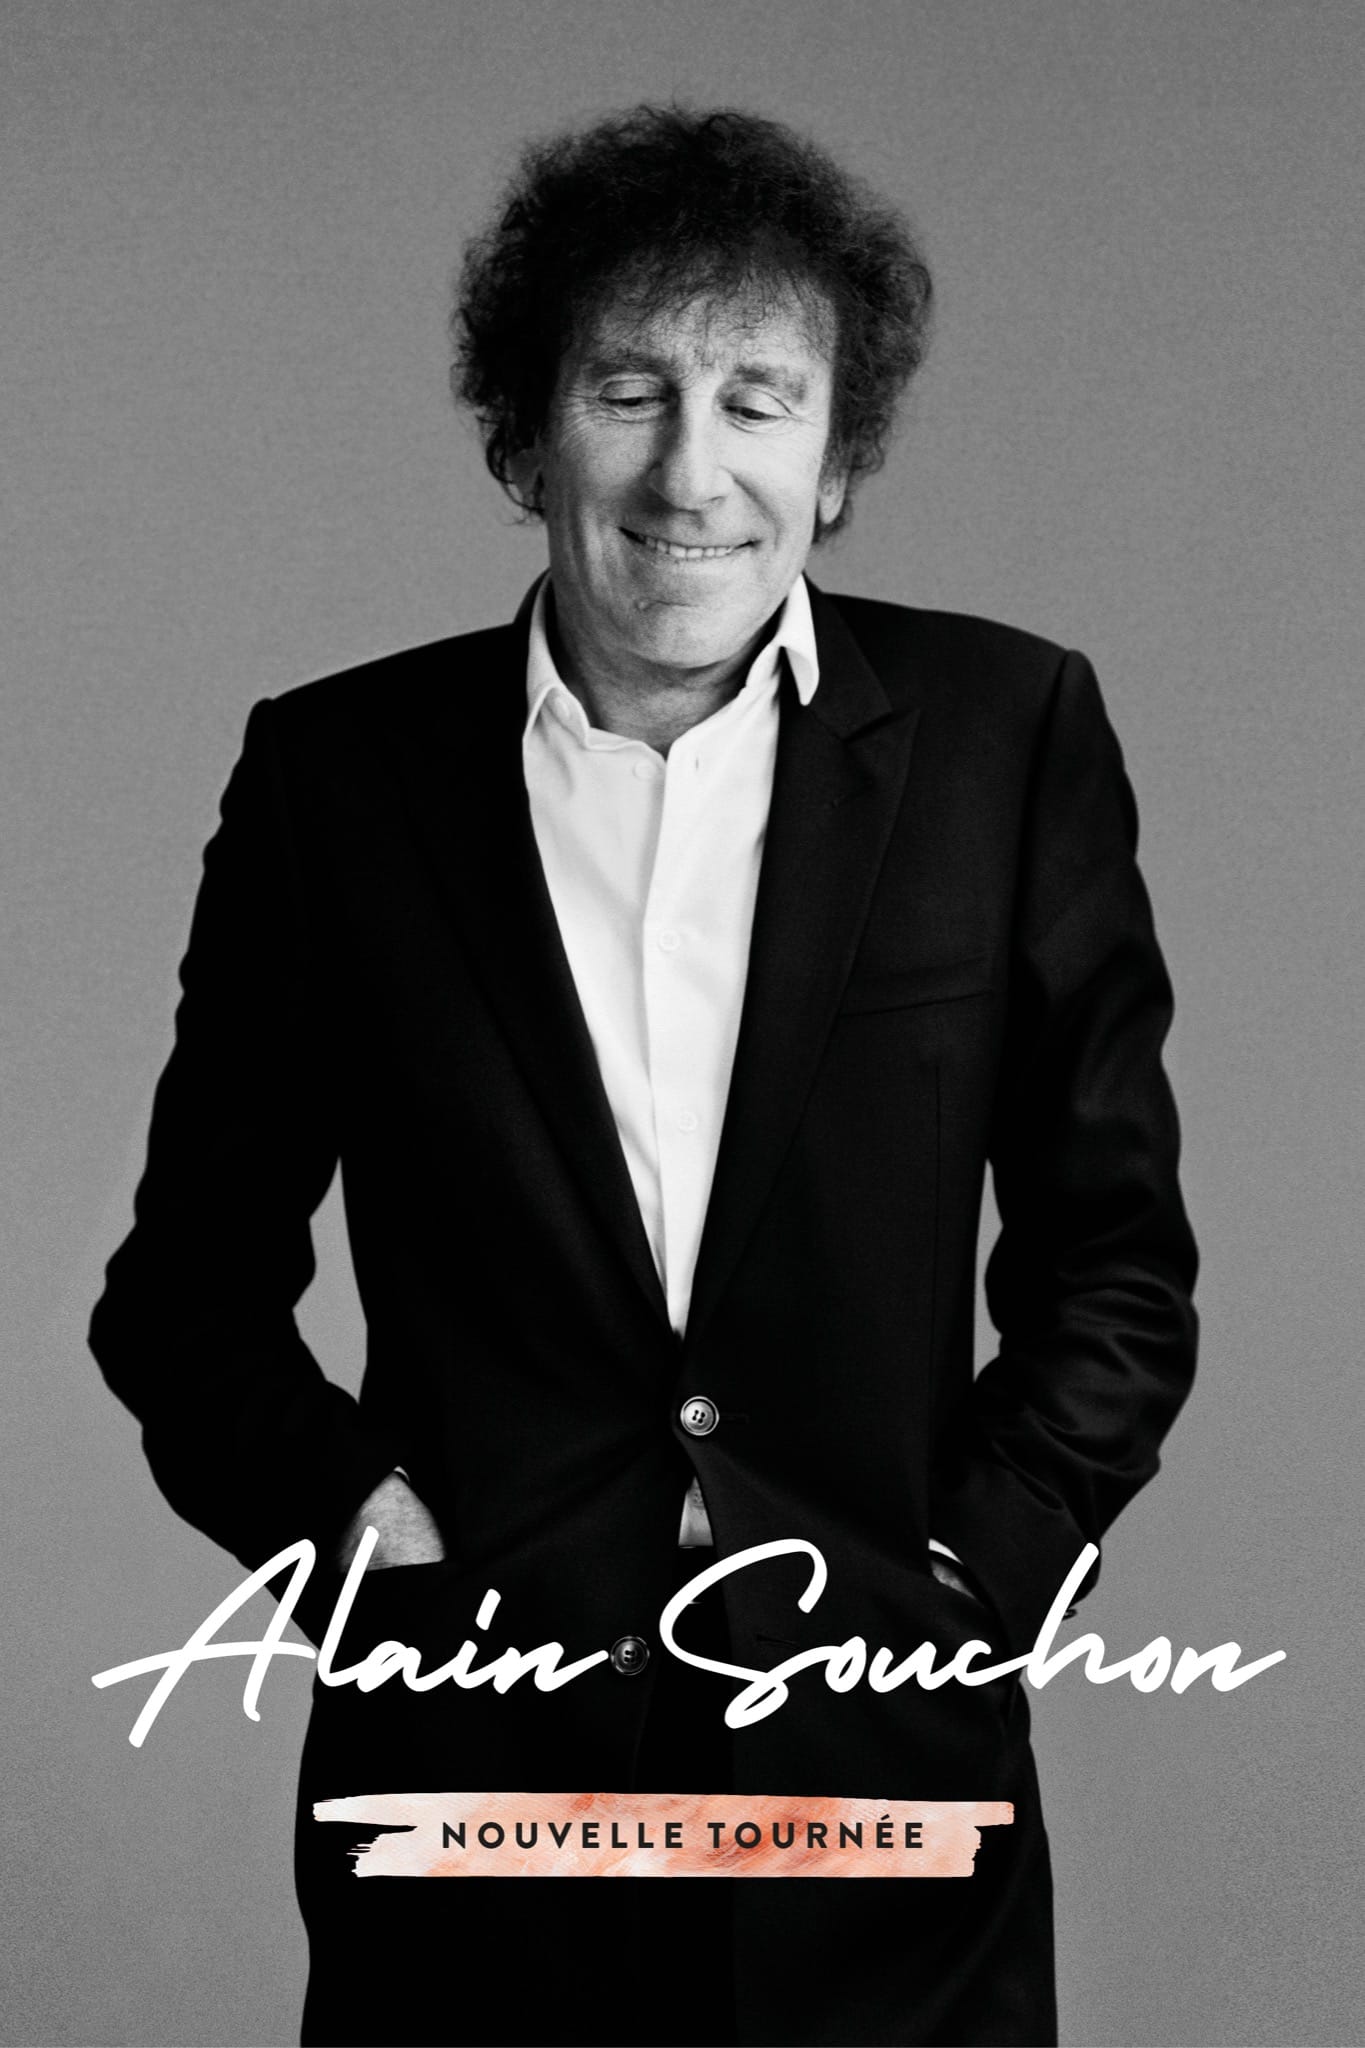 Alain Souchon affiche nouvelle tournée concerts lives